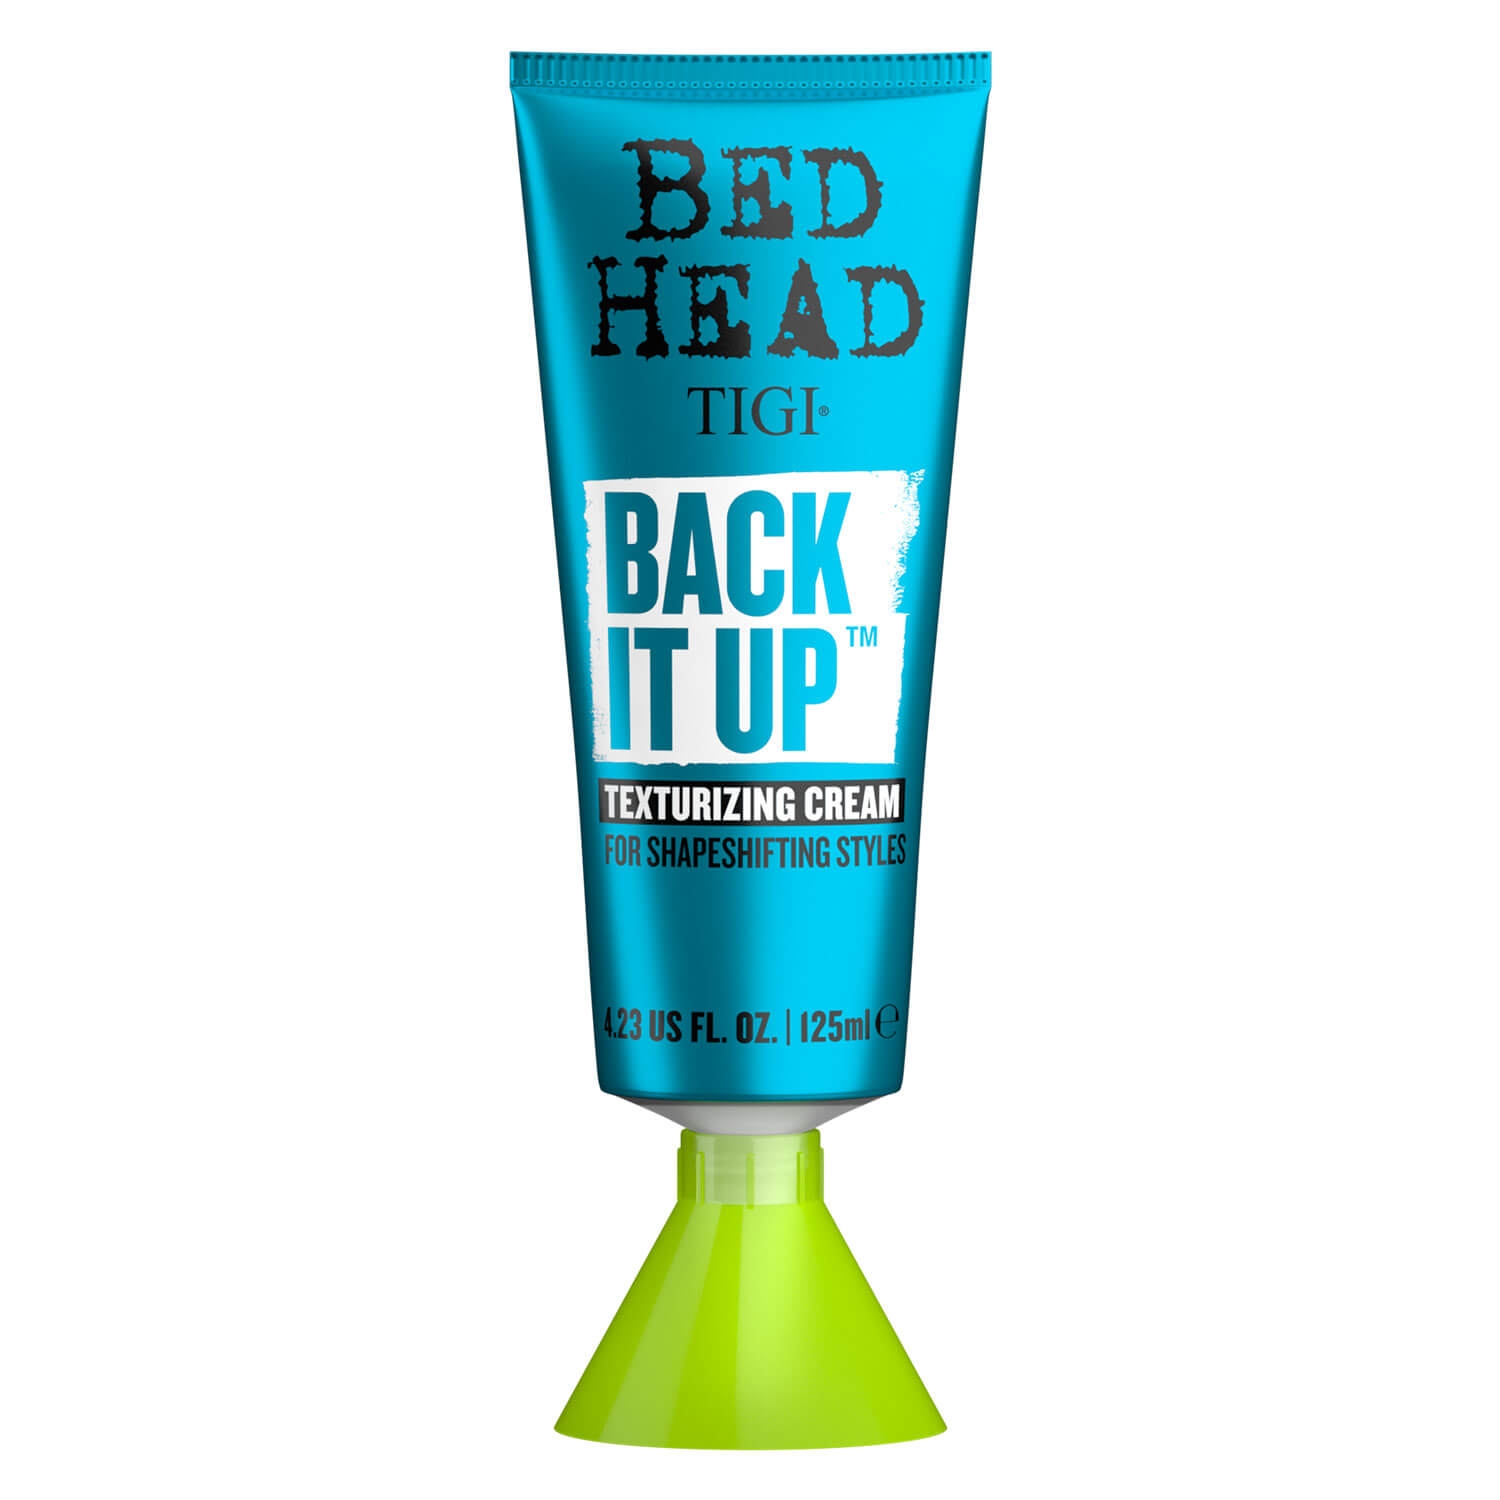 Produktbild von Bed Head - Back it Up Texturizing Cream